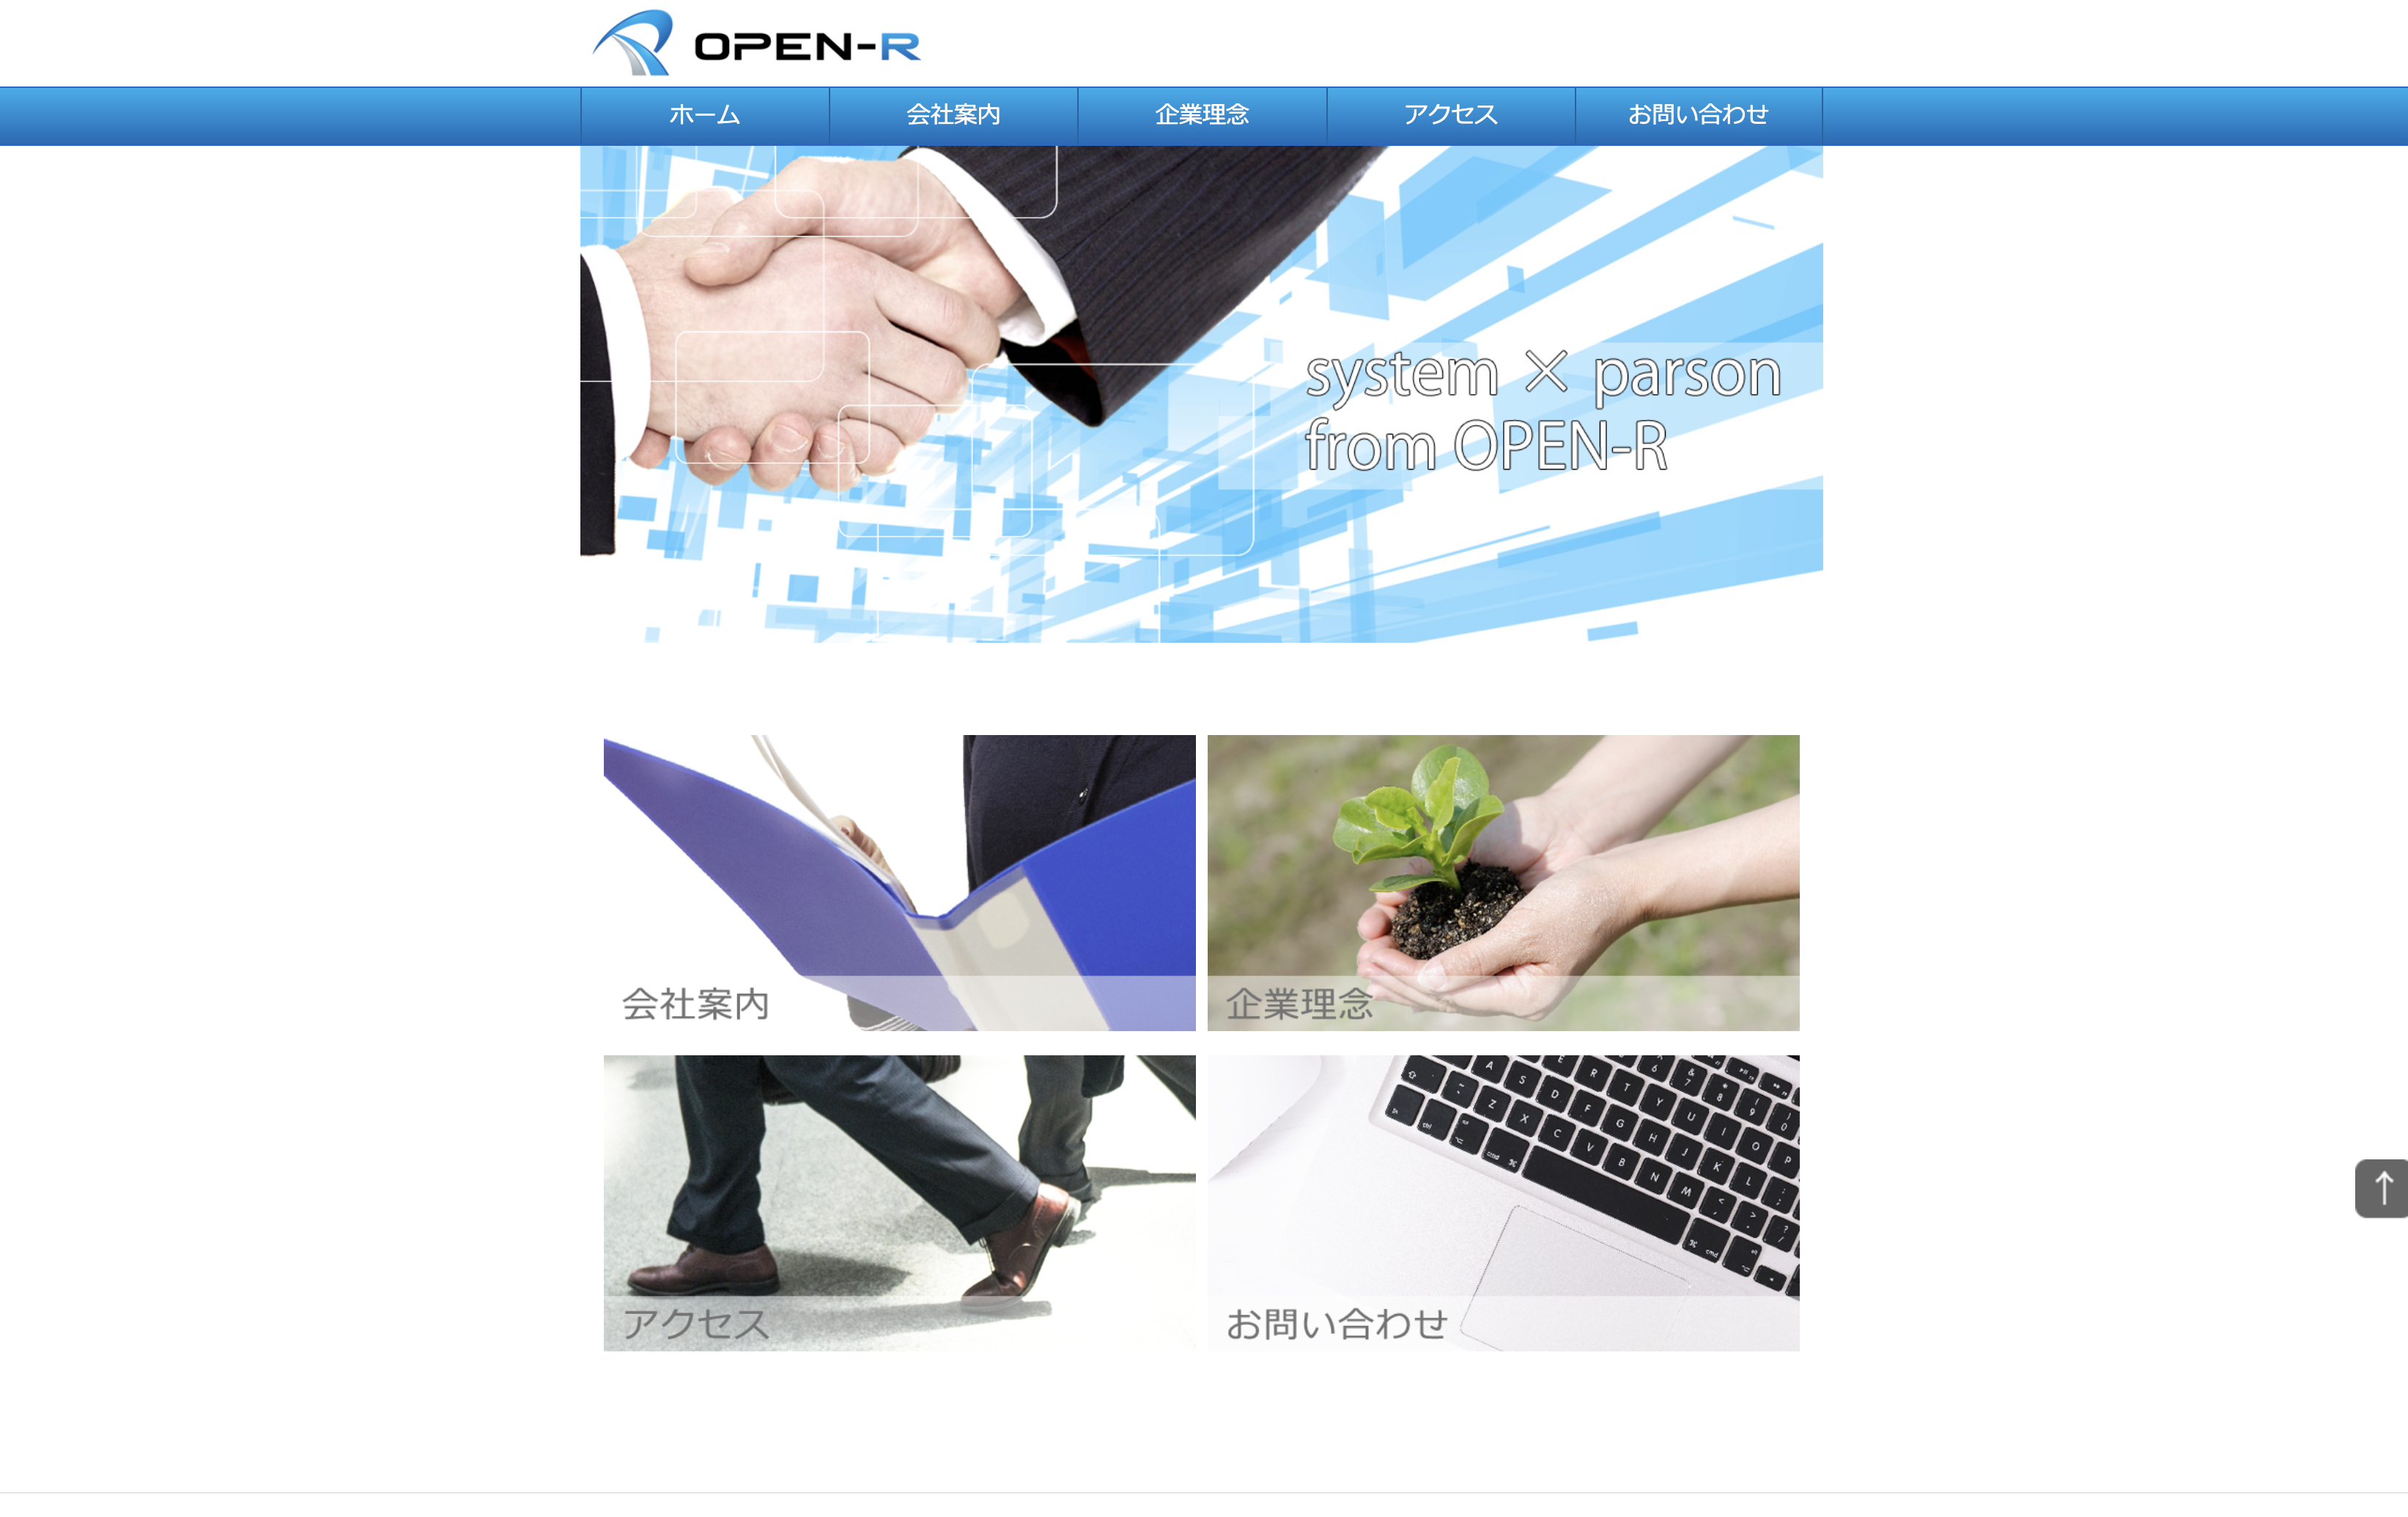 株式会社 OPEN-Rの株式会社OPEN-R:人材派遣サービス